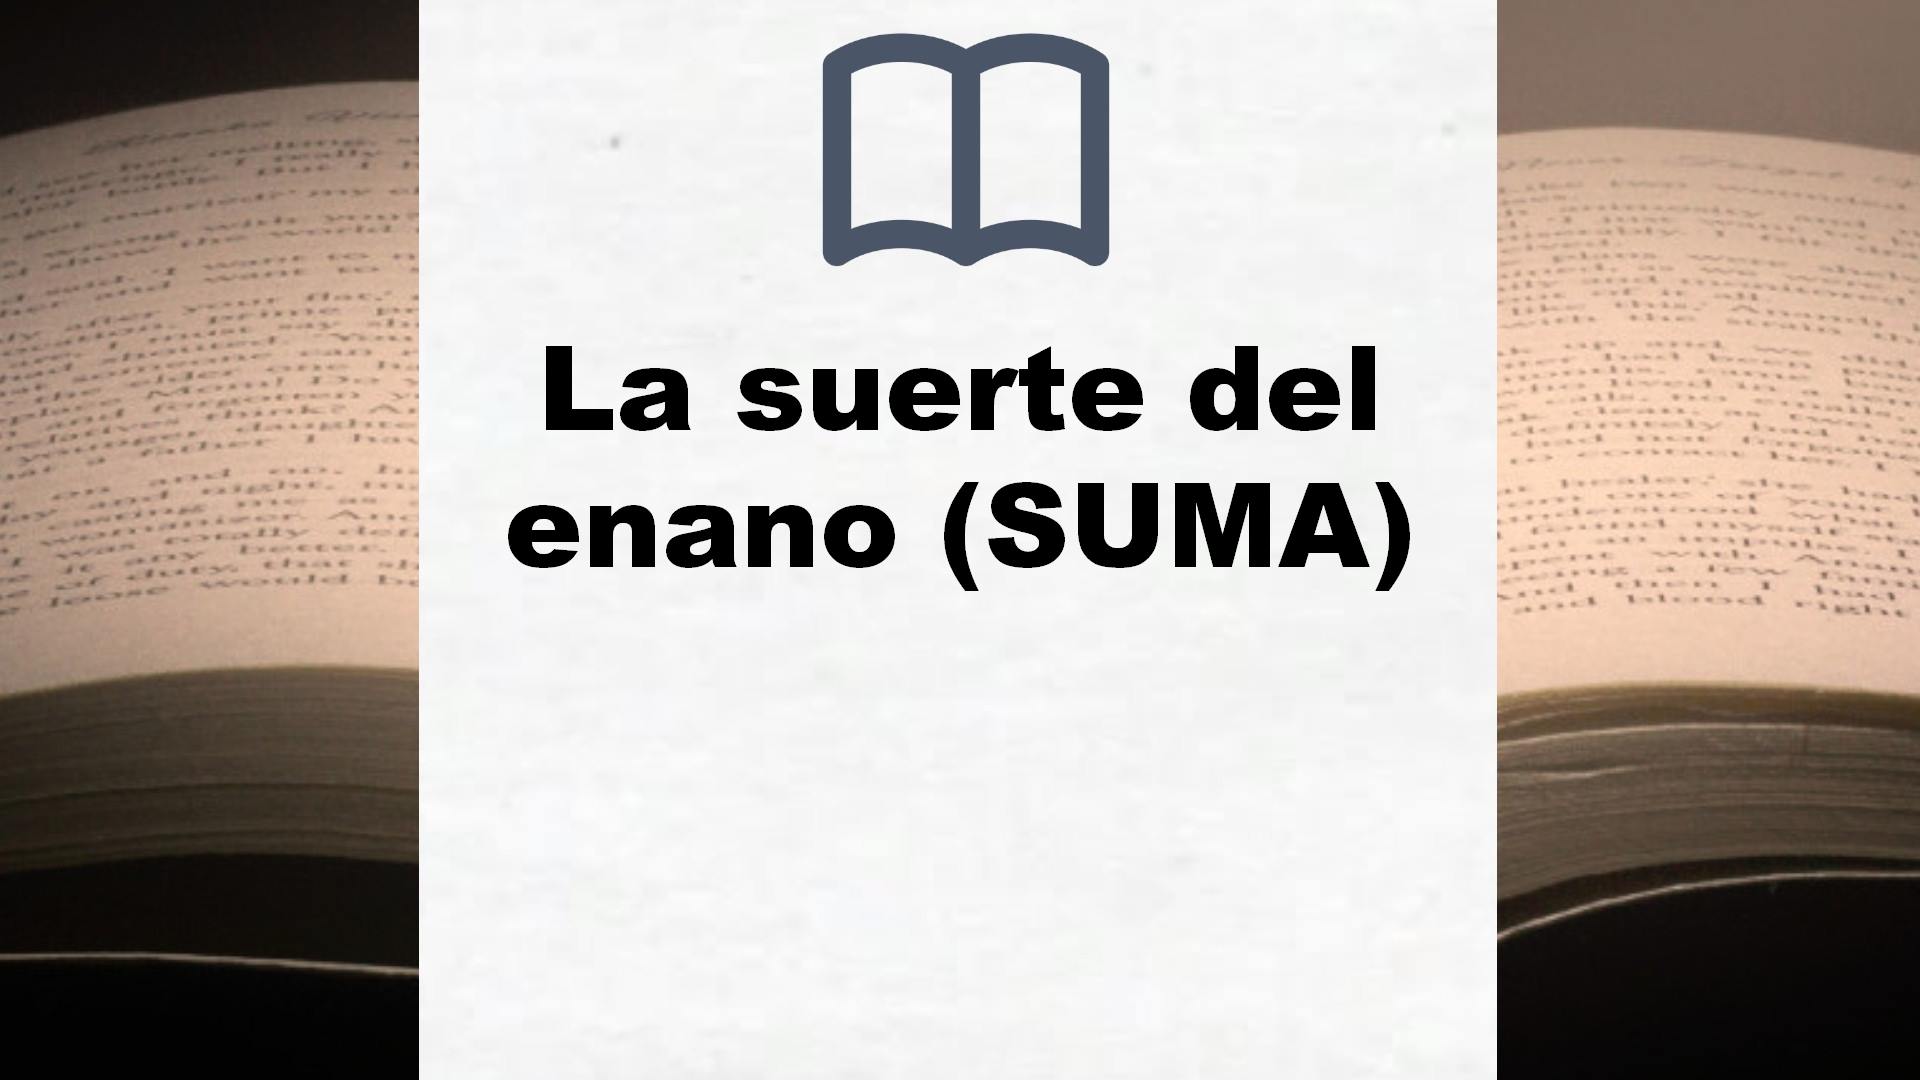 La suerte del enano (SUMA) – Reseña del libro